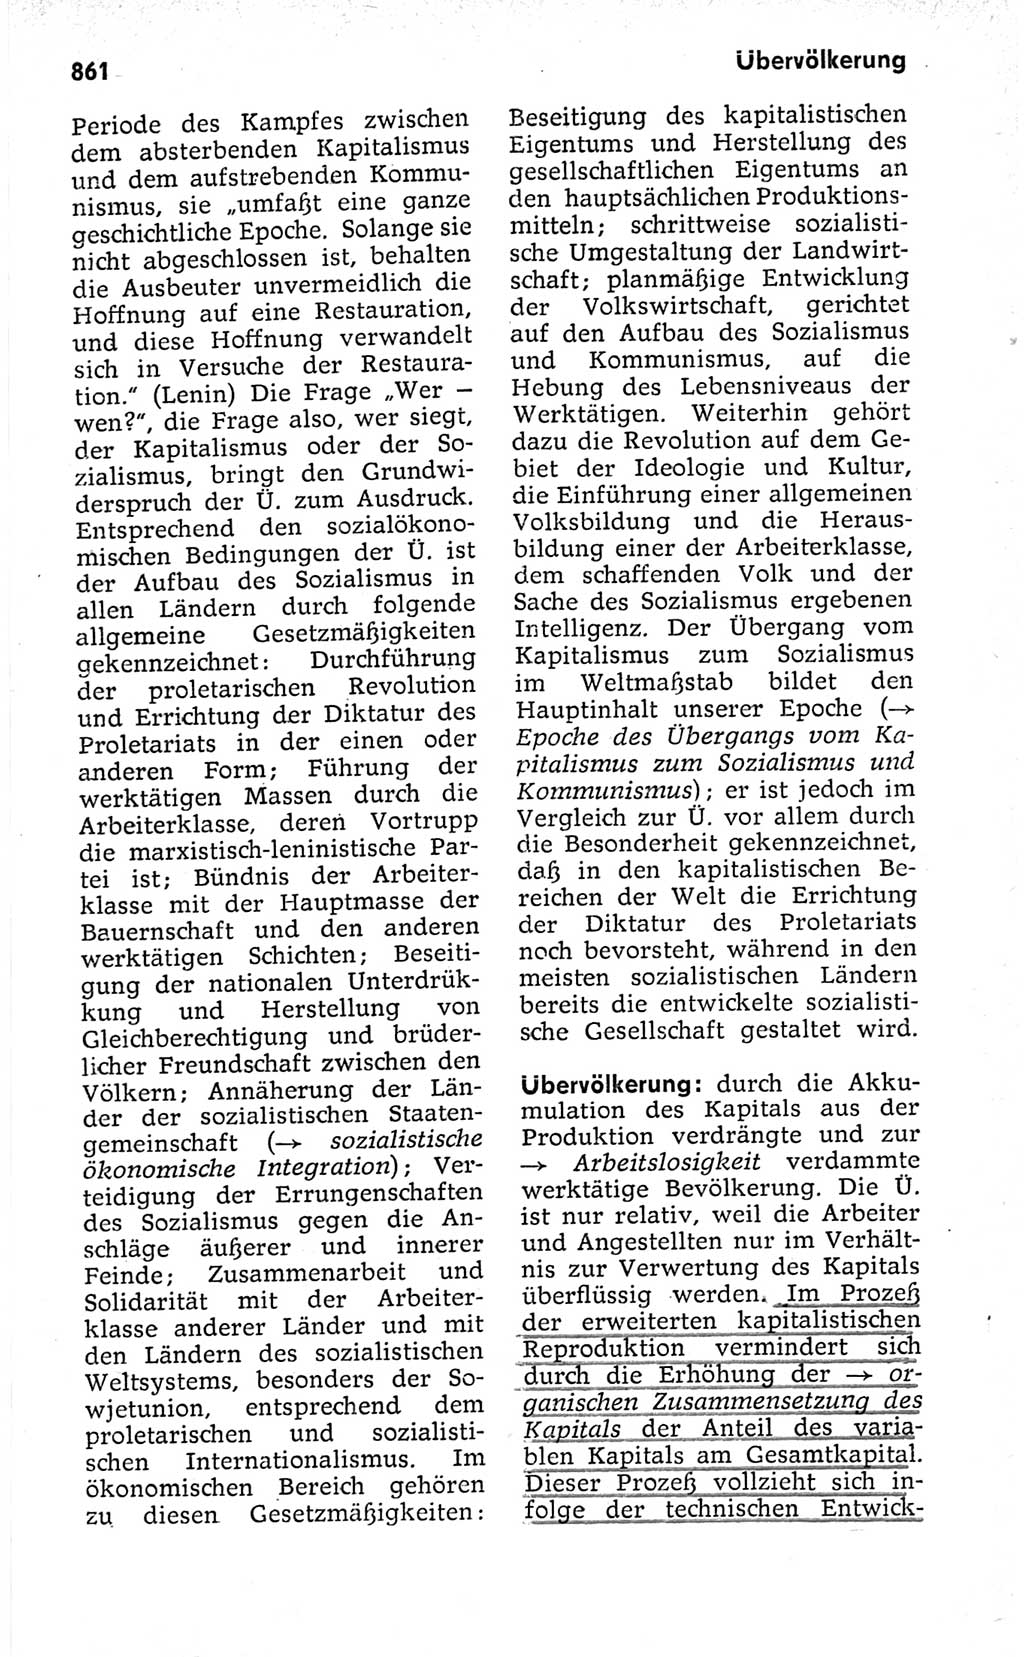 Kleines politisches Wörterbuch [Deutsche Demokratische Republik (DDR)] 1973, Seite 861 (Kl. pol. Wb. DDR 1973, S. 861)